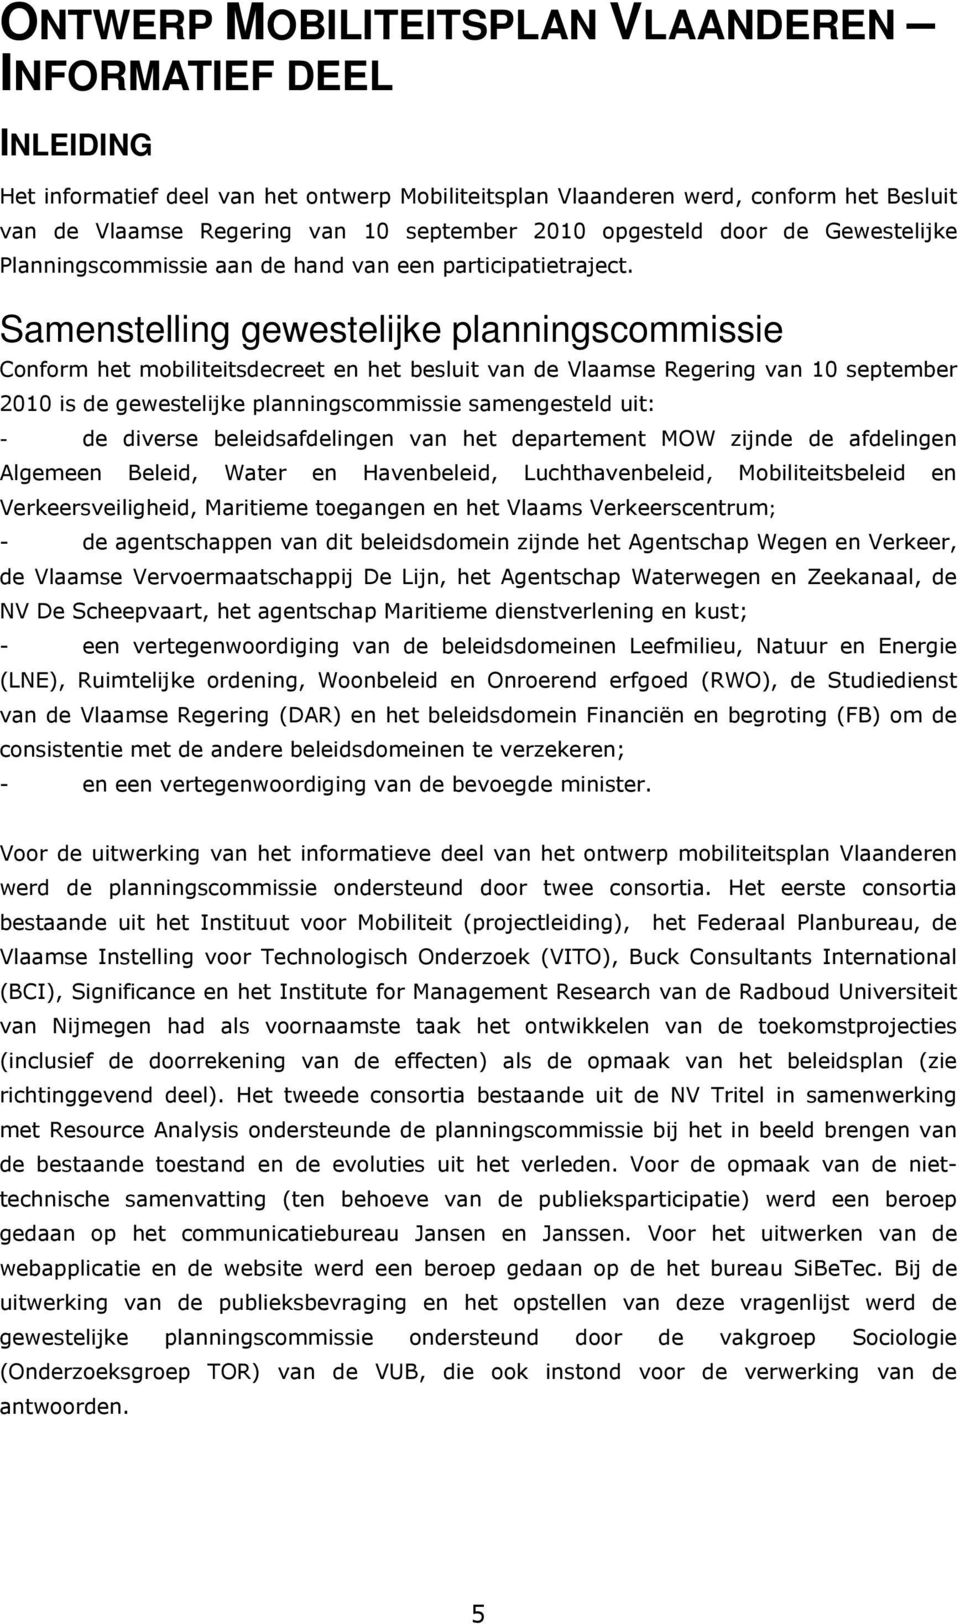 Samenstelling gewestelijke planningscommissie Conform het mobiliteitsdecreet en het besluit van de Vlaamse Regering van 10 september 2010 is de gewestelijke planningscommissie samengesteld uit: - de